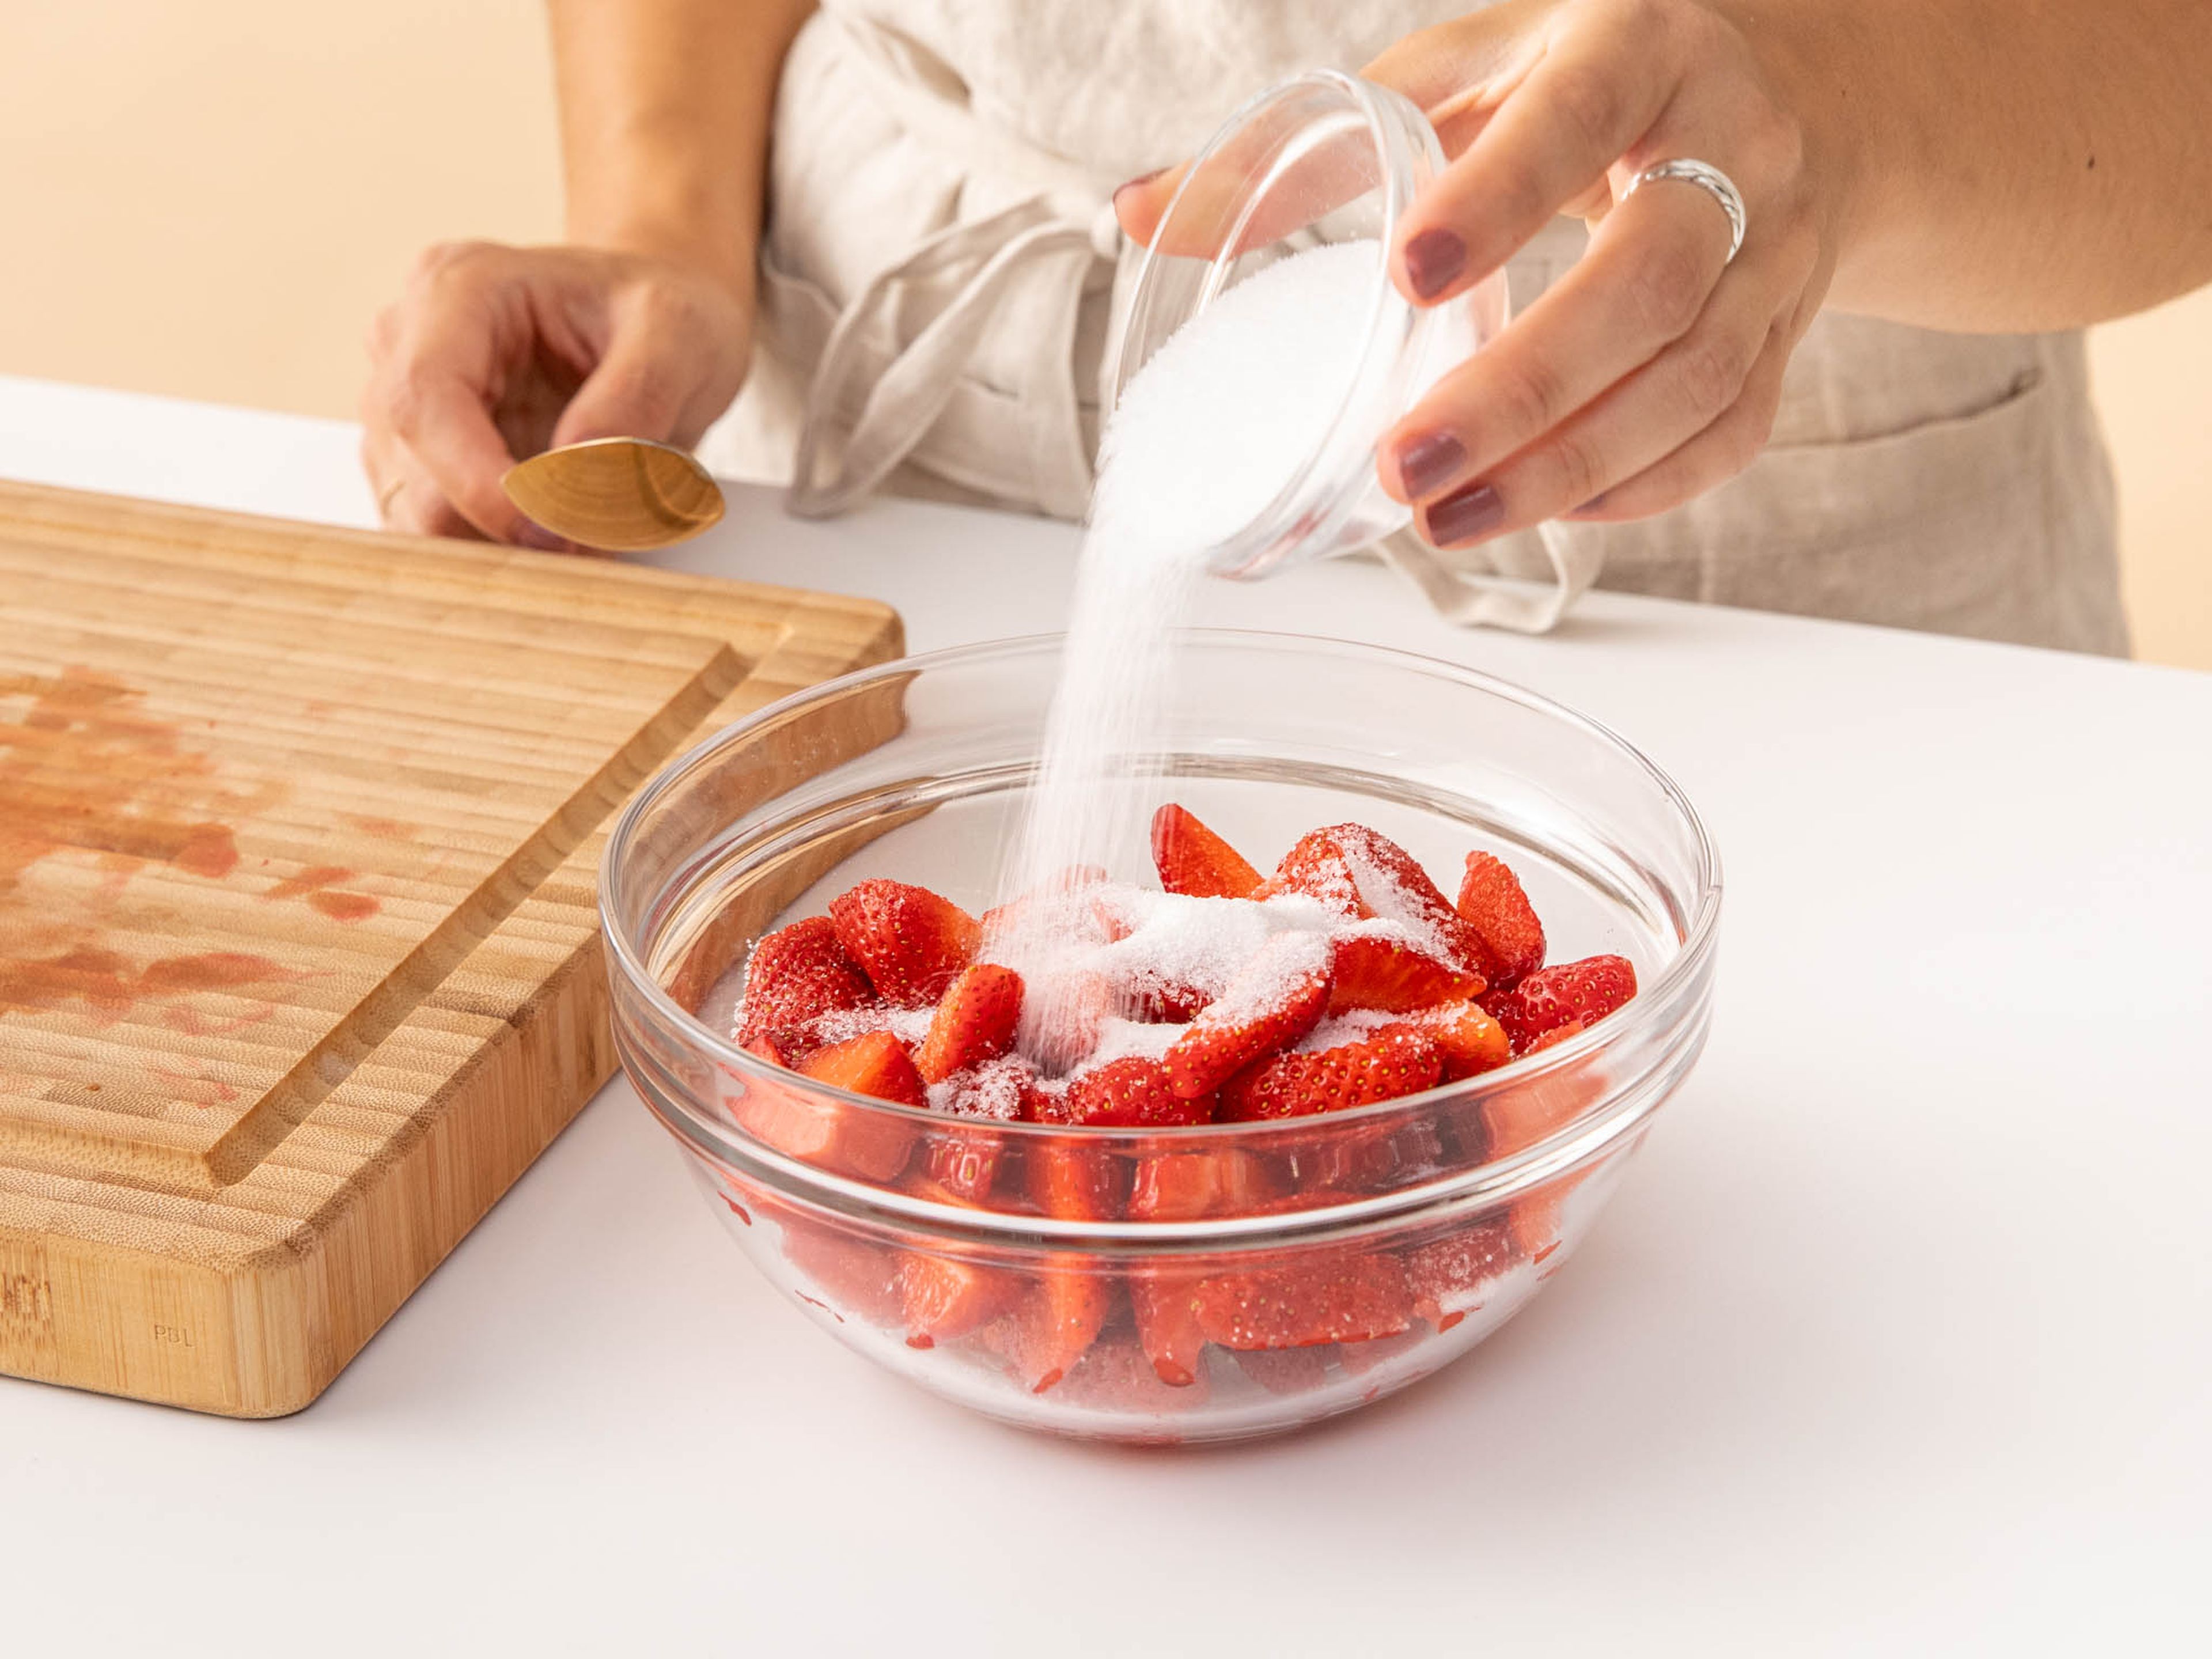 Erdbeeren waschen und Strunk entfernen. Erdbeeren vierteln und mit der Hälfte des Zuckers mischen. Für ca. 10 Min. oder bis die glänzend werden und einen Teil ihres Safts abgeben, ruhen lassen.